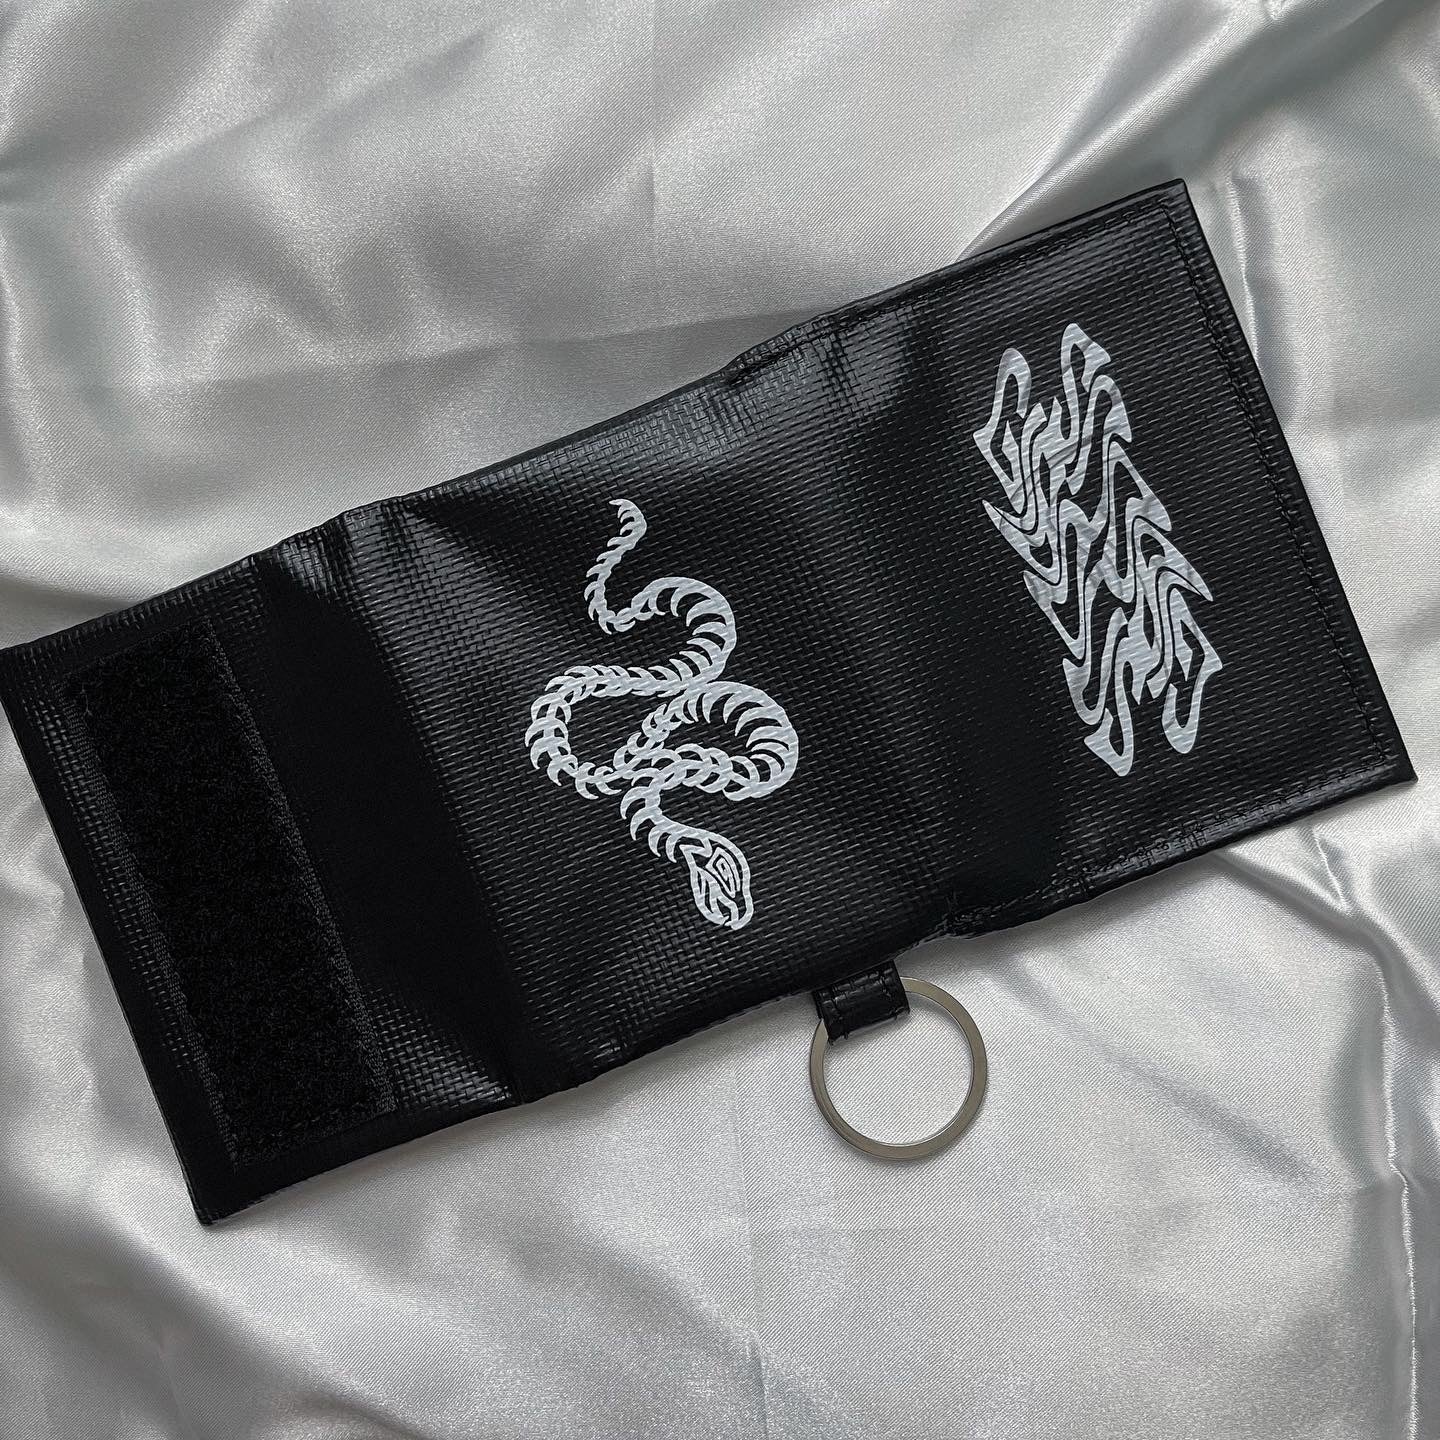 gibous snake bone Mini Key wallet